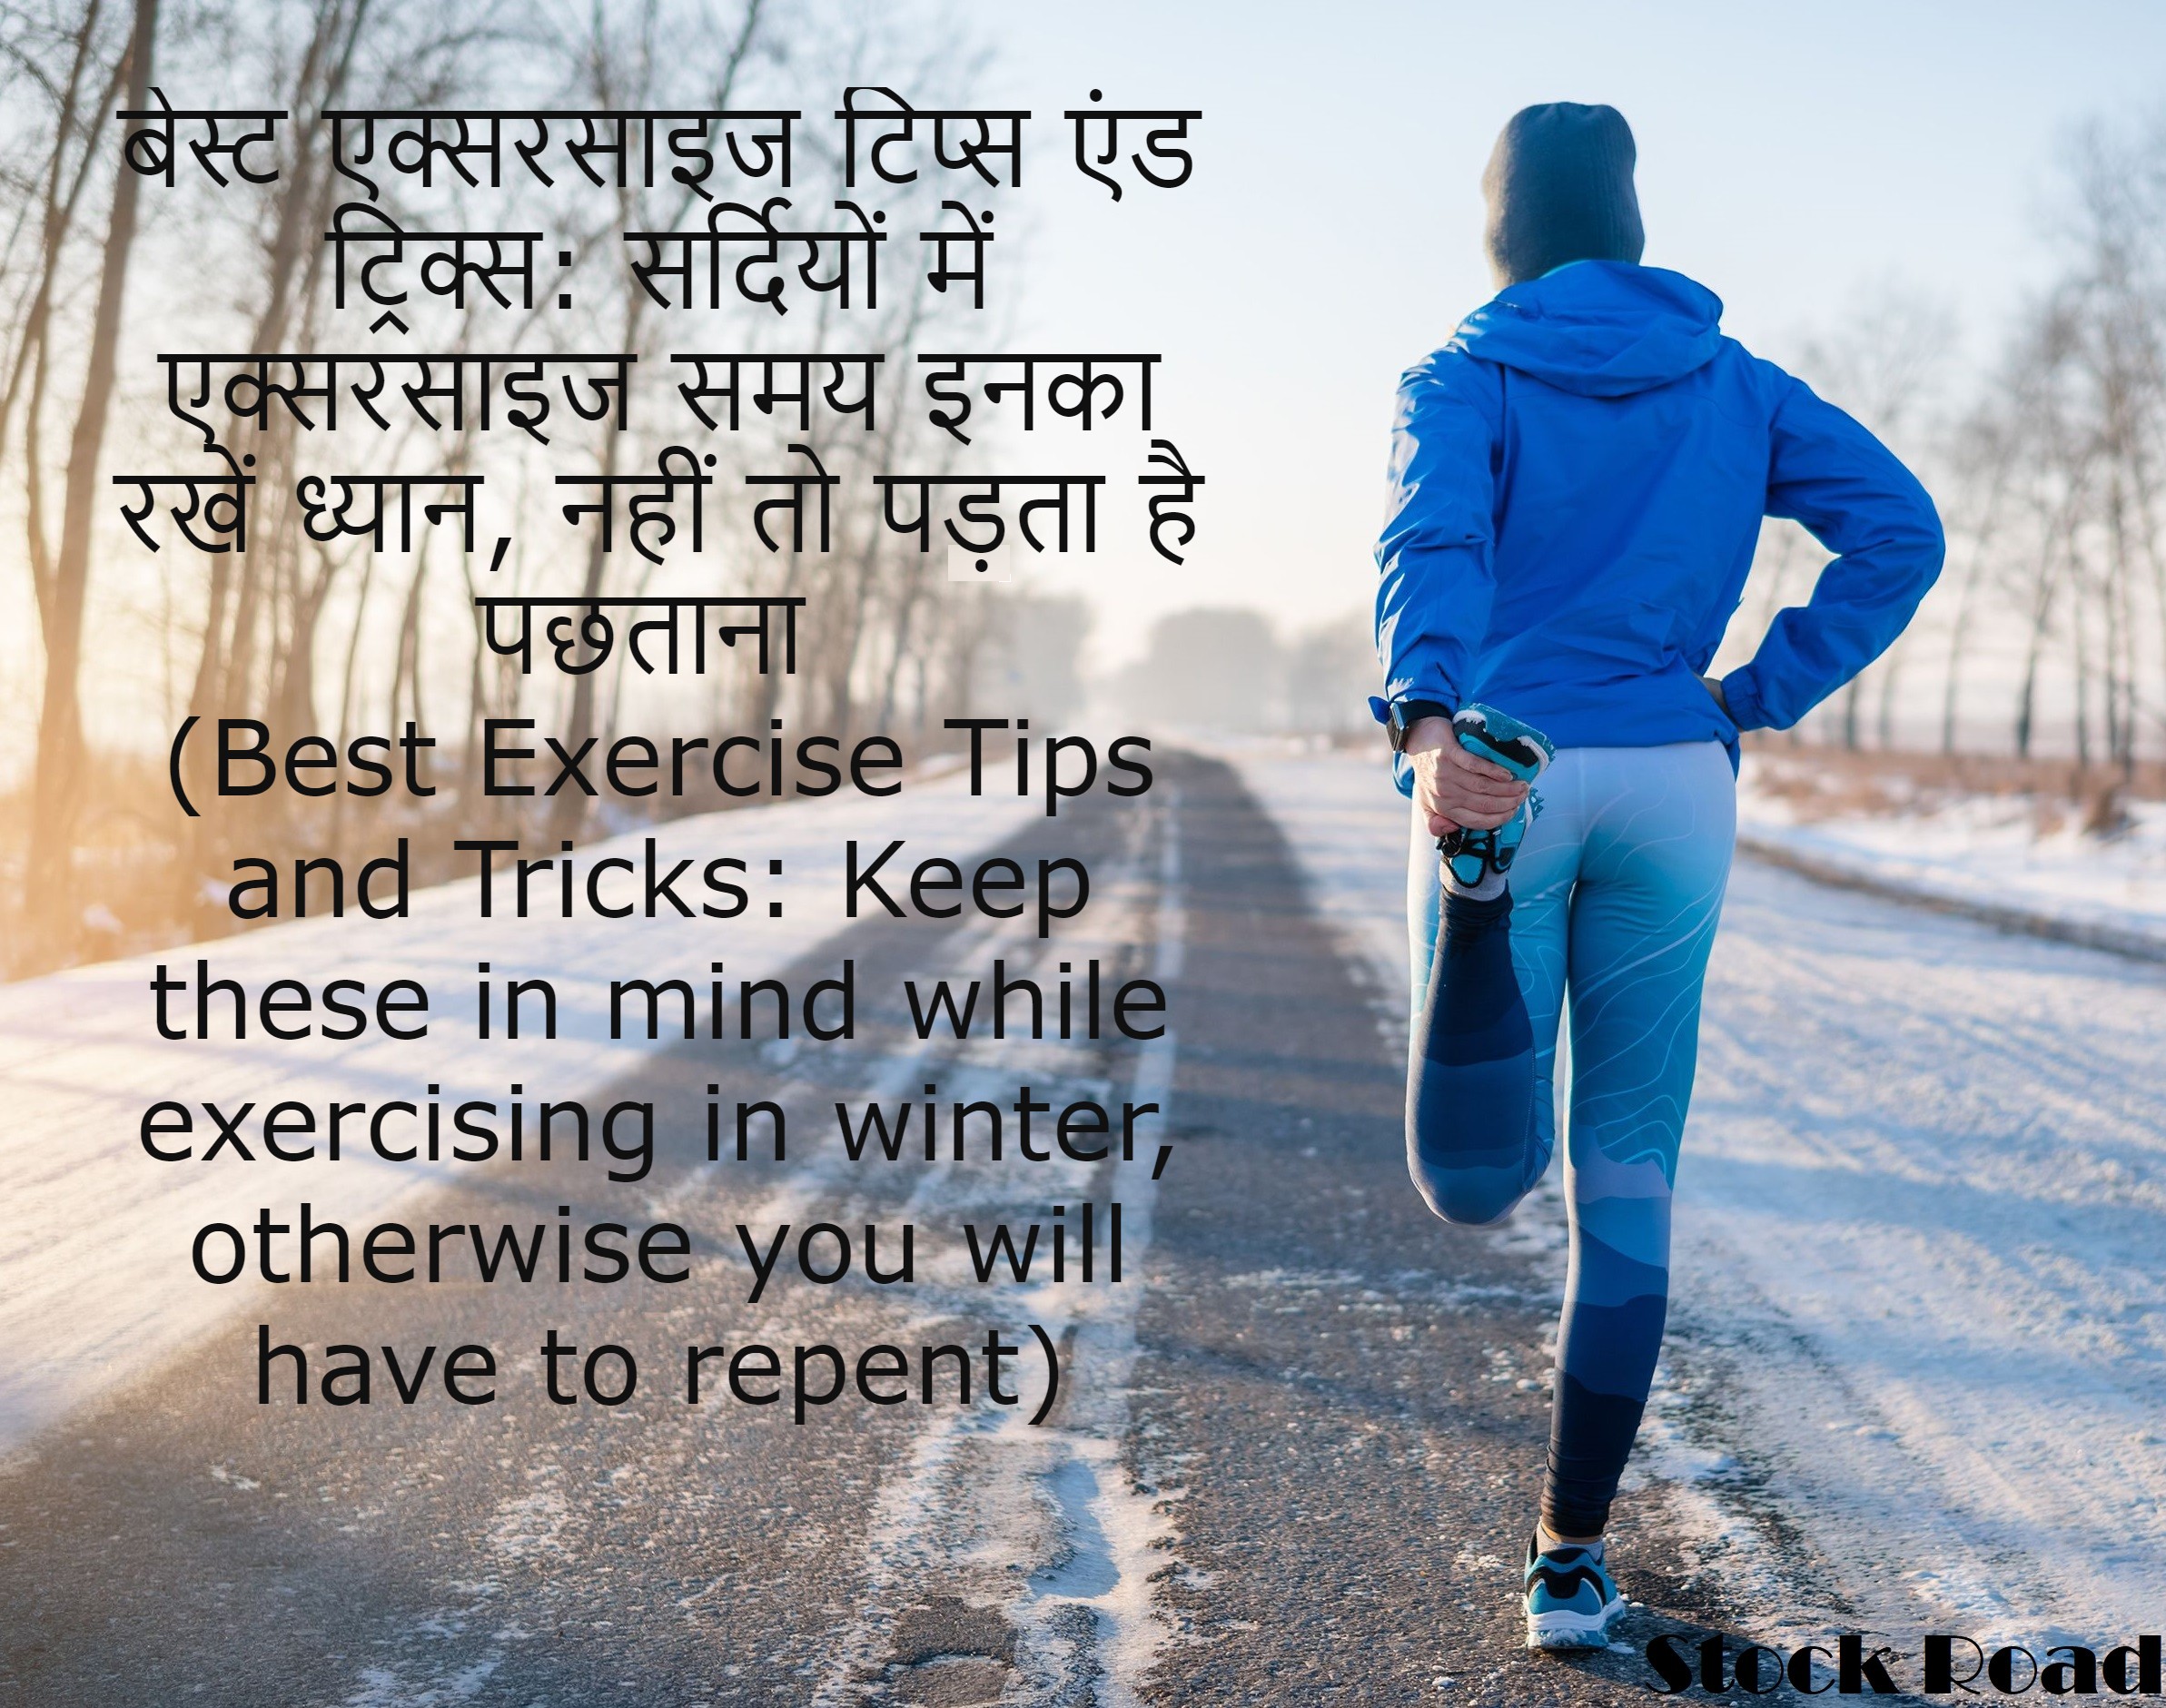 बेस्ट एक्सरसाइज टिप्स एंड ट्रिक्स: सर्दियों में एक्सरसाइज समय इनका रखें ध्यान, नहीं तो पड़ता है पछताना (Best Exercise Tips and Tricks: Keep these in mind while exercising in winter, otherwise you will have to repent)